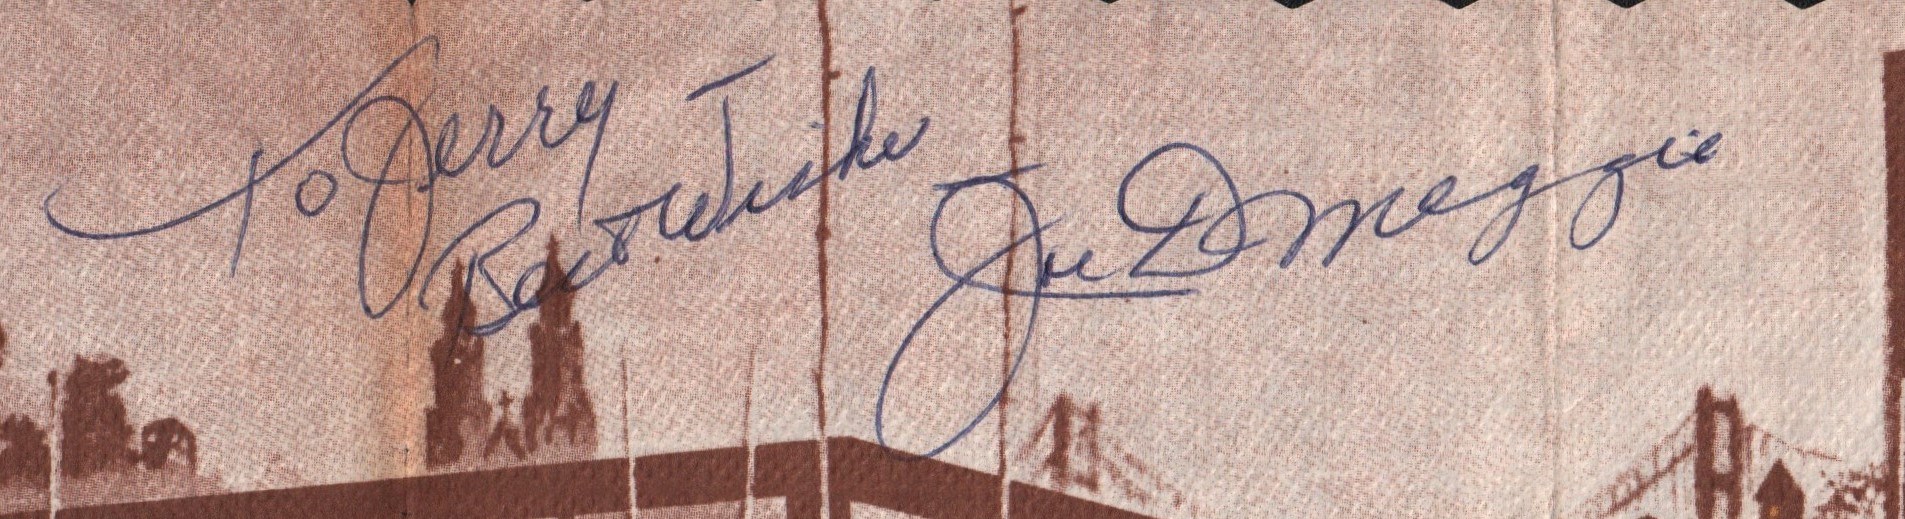 - Joe DiMaggio Signed Restaurant Placemat